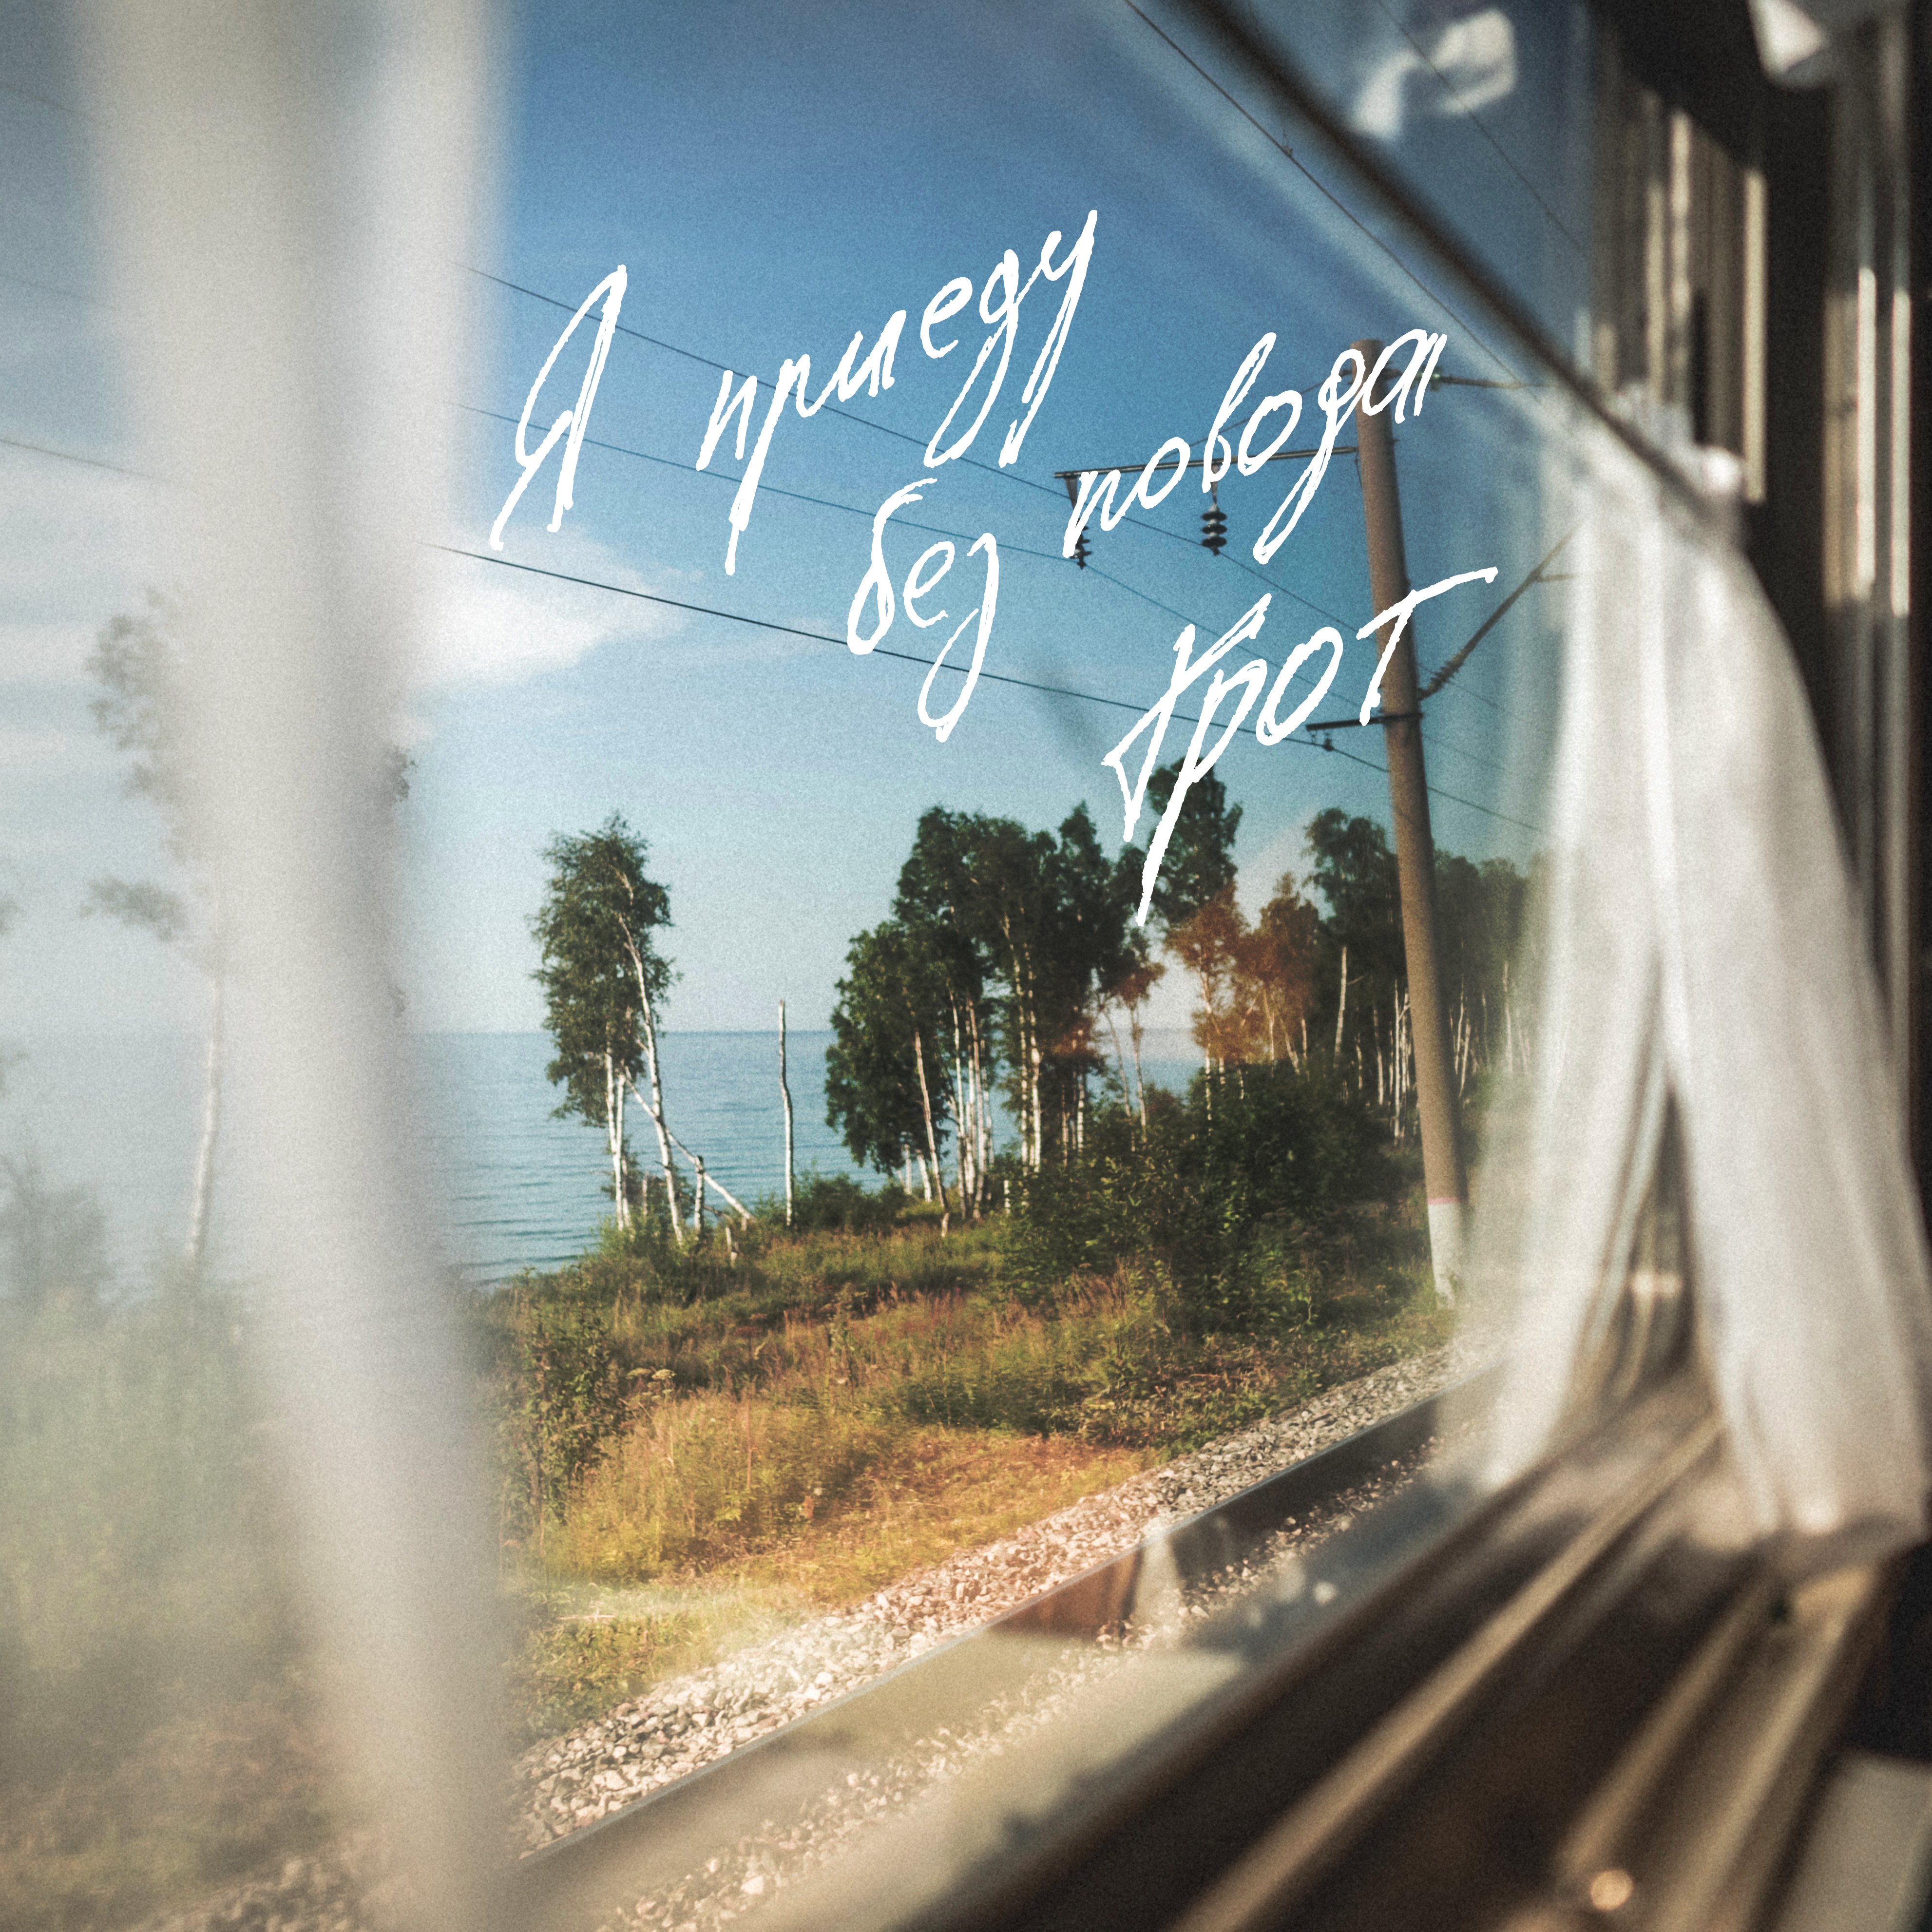 Песня мы все живем однажды. Я приеду без повода грот. Вид из окна поезда. Окно поезда. Пейзаж из окна поезда.